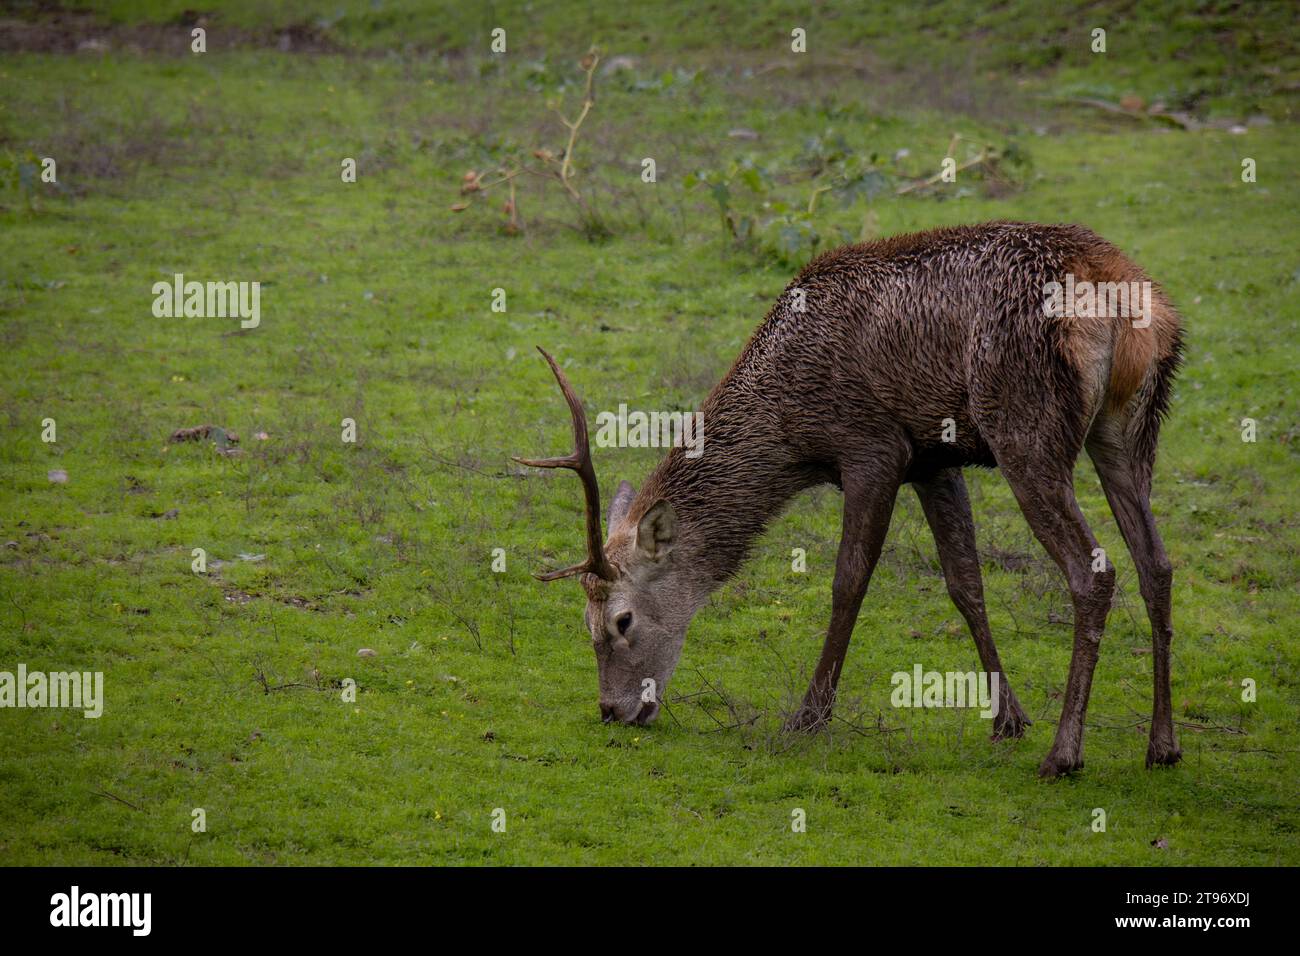 Ciervo macho con un solo cuerno, comiendo hierba en el Parque Nacional de Monfragüe, Cáceres, España Stock Photo